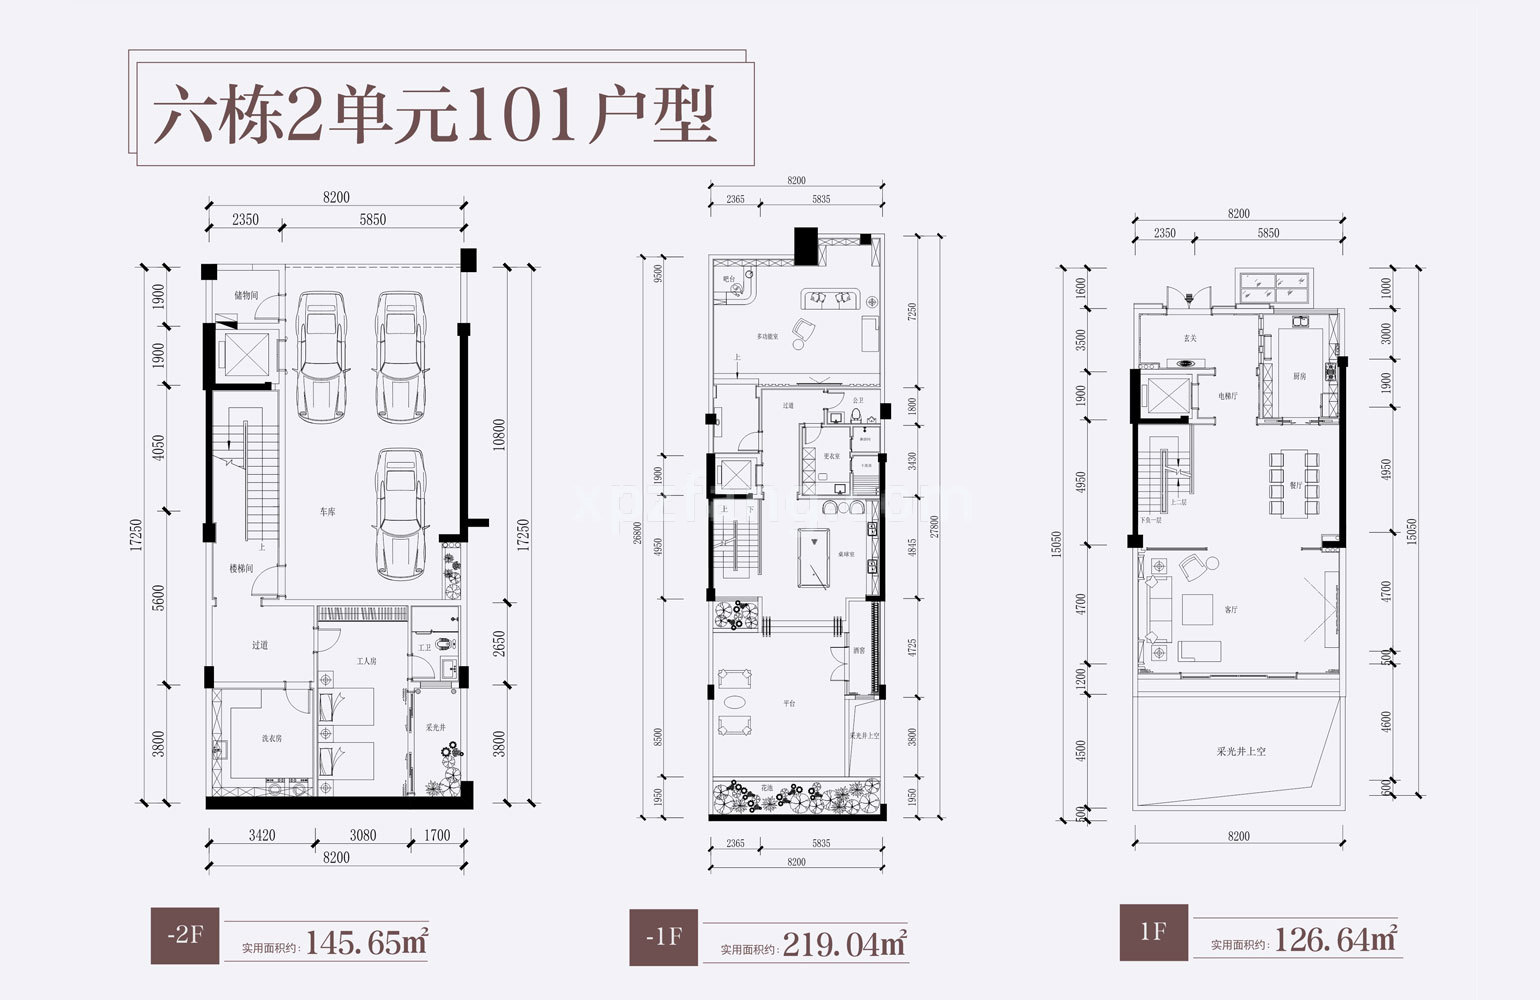 颐景山庄 别墅101户型-2F、-1F、1F 实用面积854.97㎡